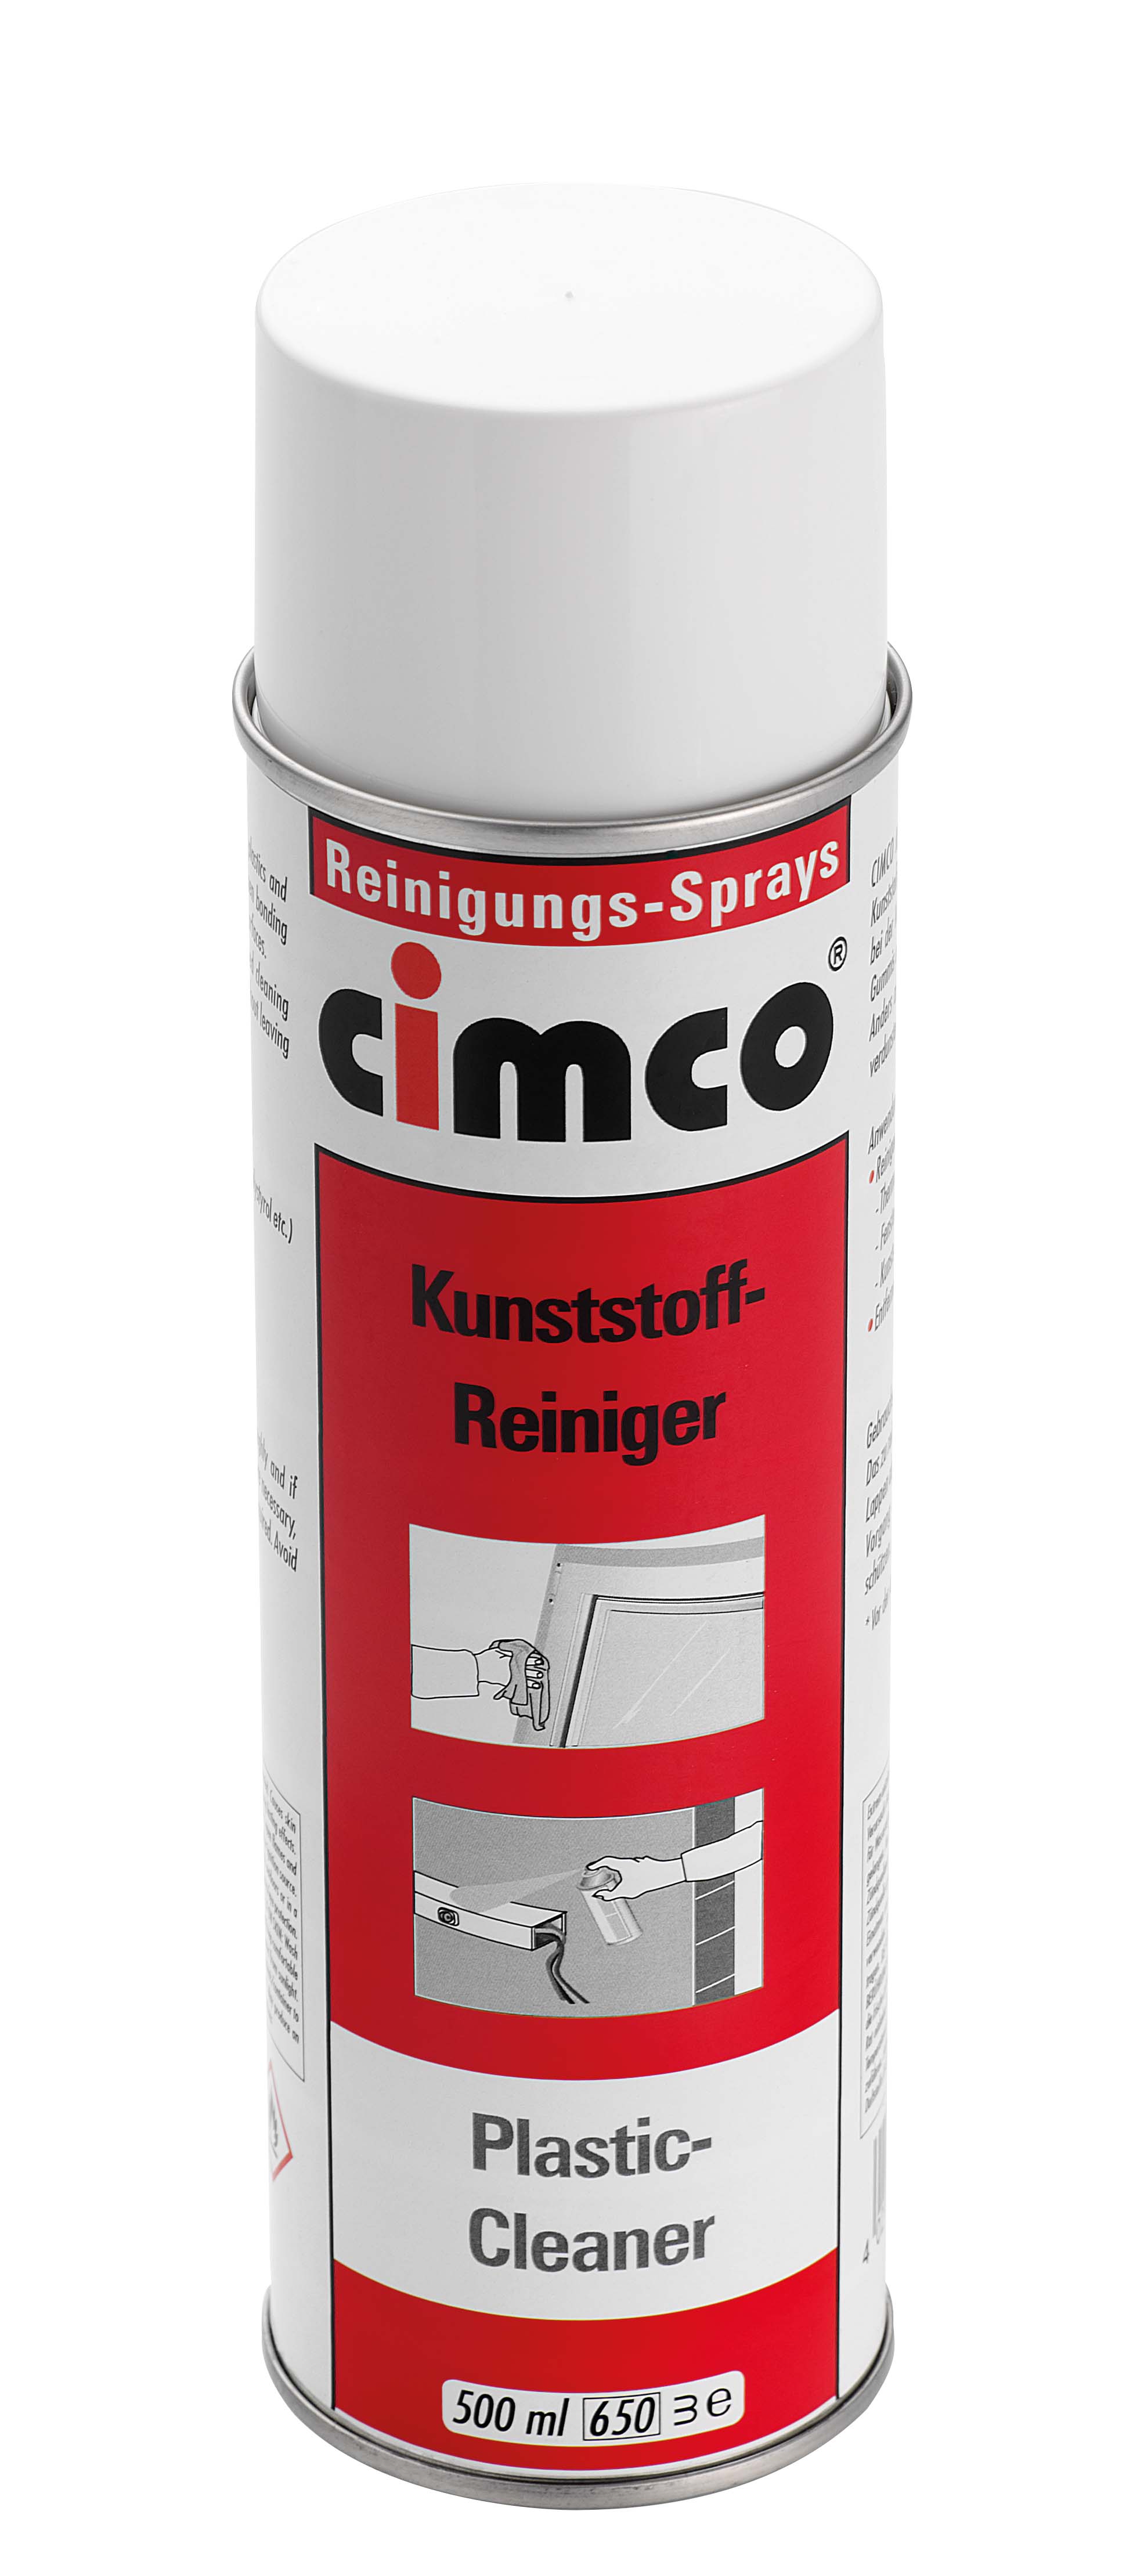  Kunststofreiniging-Spray, 500ml 